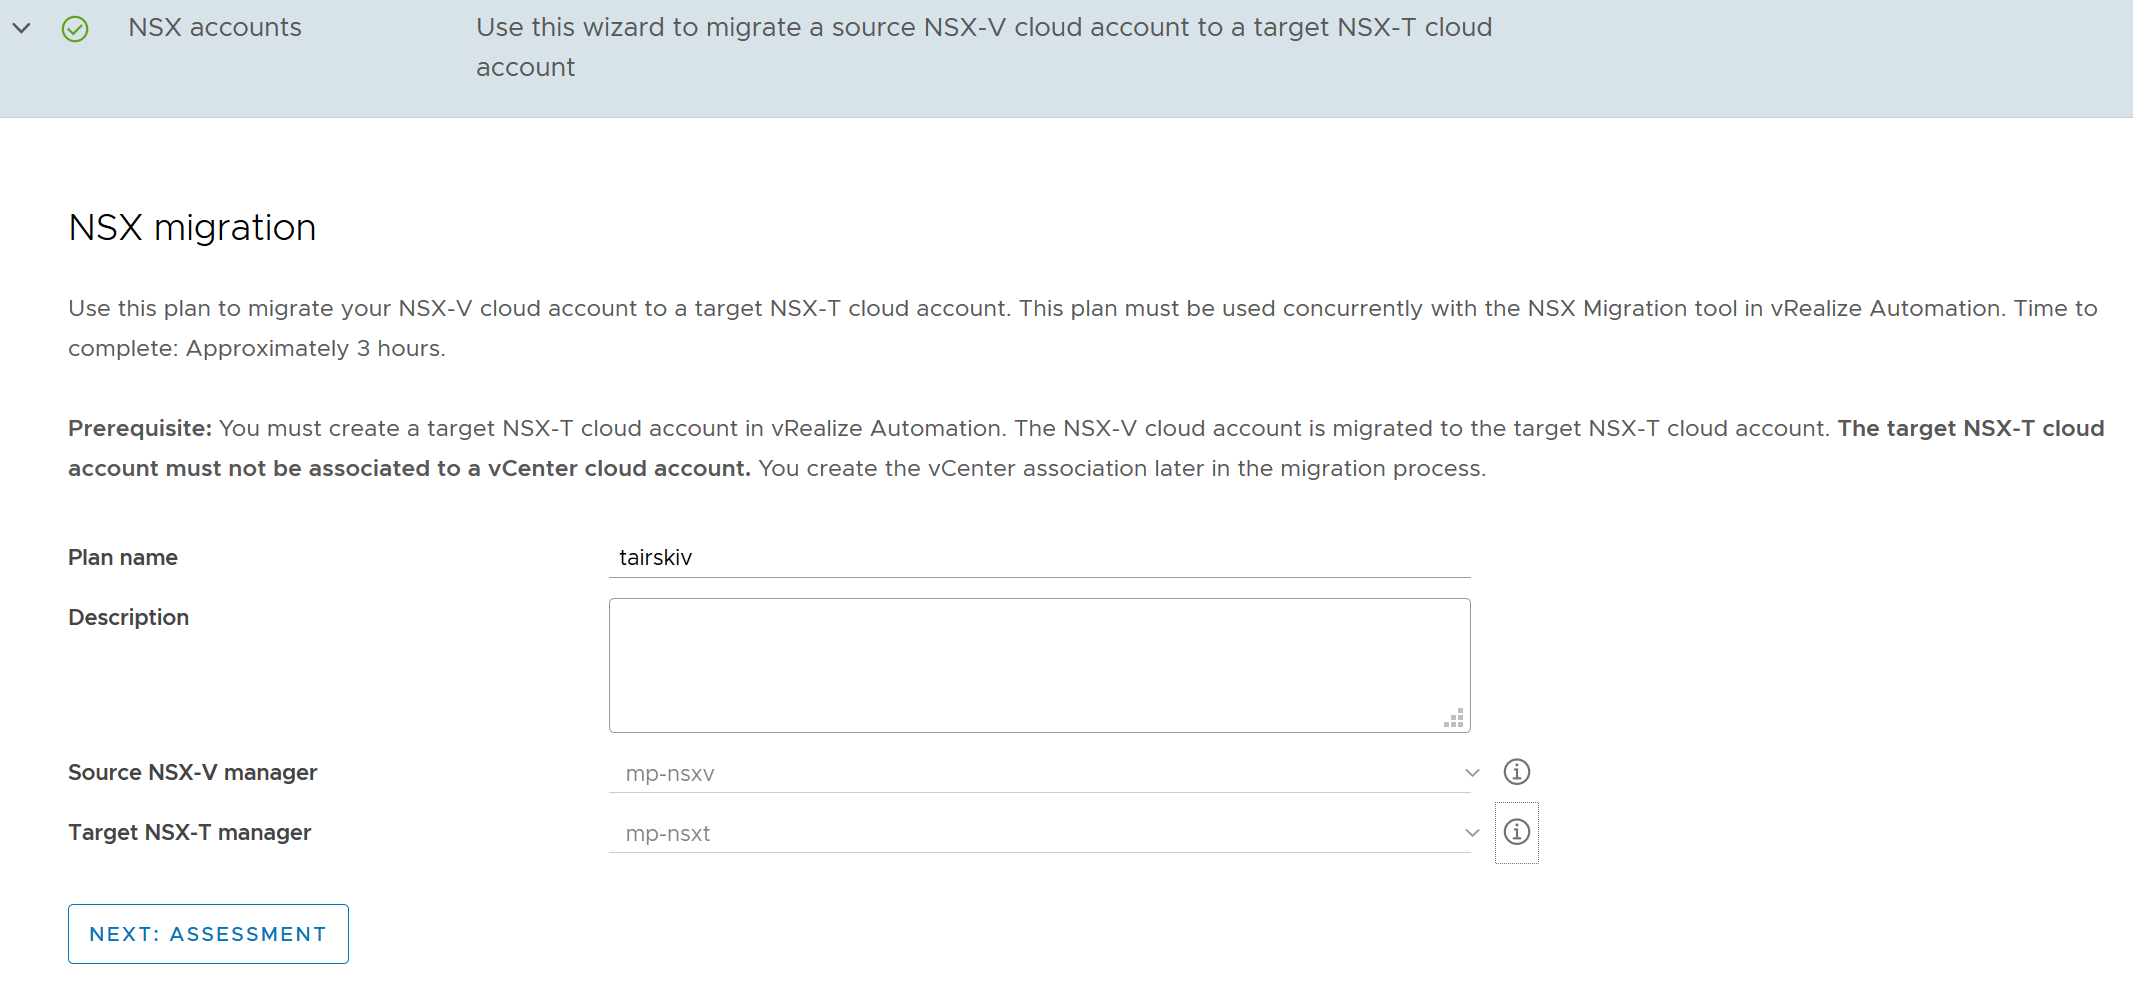 畫面顯示計劃頁面 1，其中顯示了來源 NSX-V 和目標 NSX-T 雲端帳戶